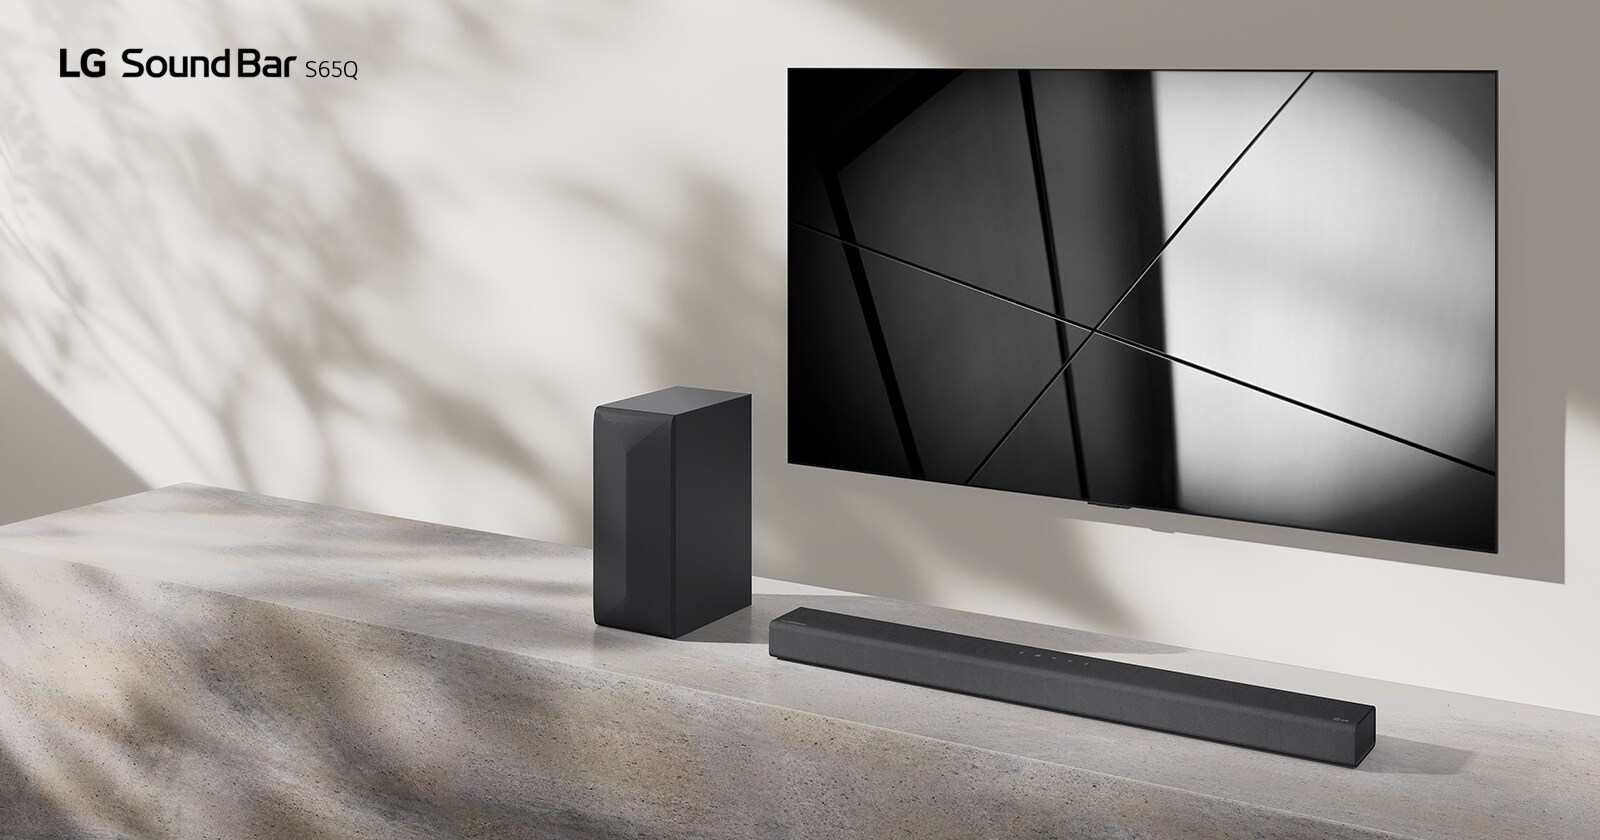 لقطة تعرض مكبر الصوت ساوند بار LG S65Q وتلفزيون LG موضوعين معًا في غرفة المعيشة. التلفزيون قيد التشغيل ويعرض صورة بالأبيض والأسود.